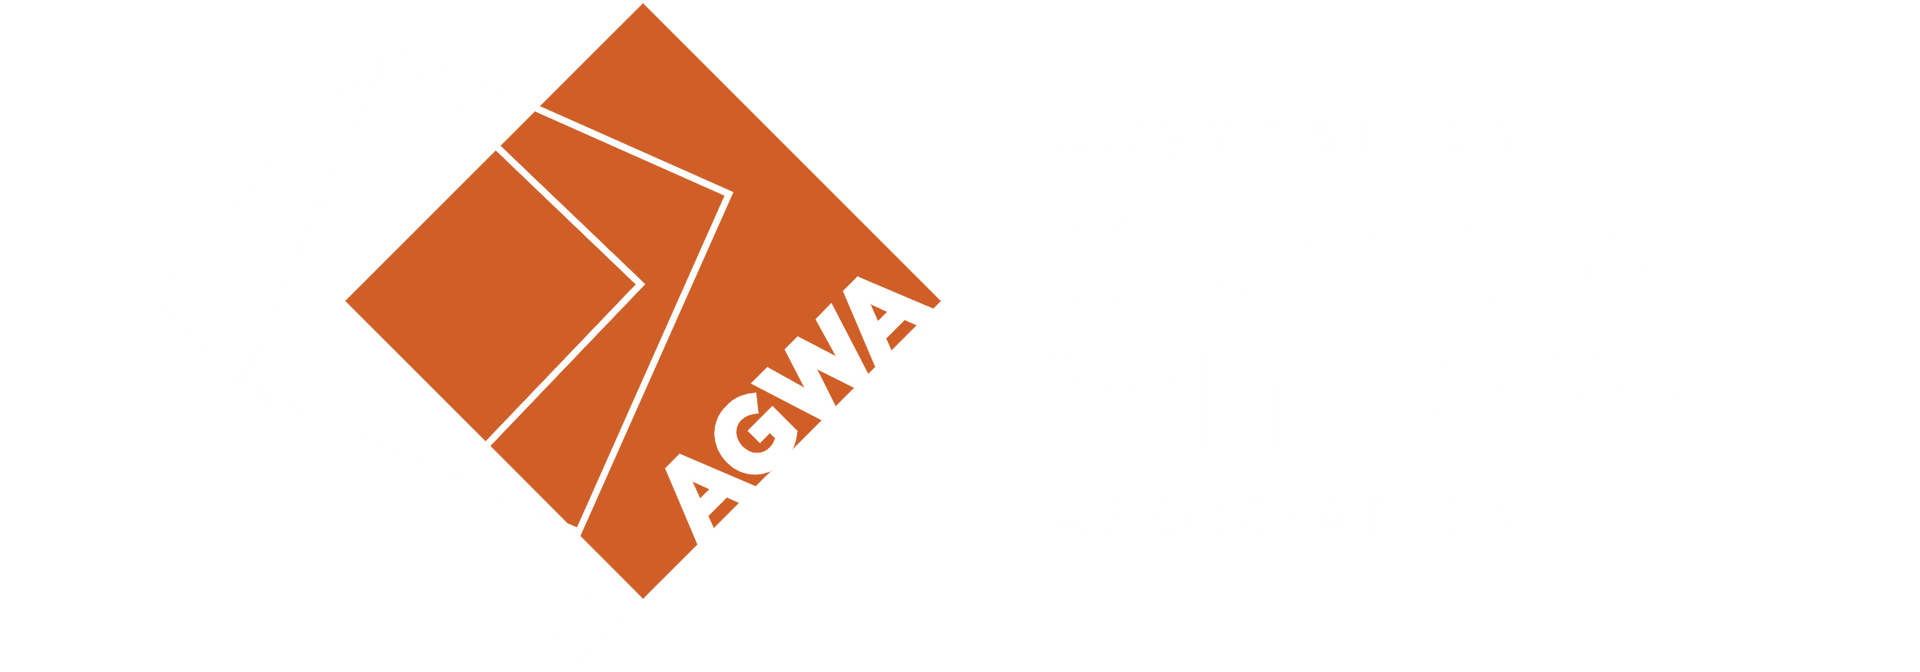 Glass & Window Association Logo